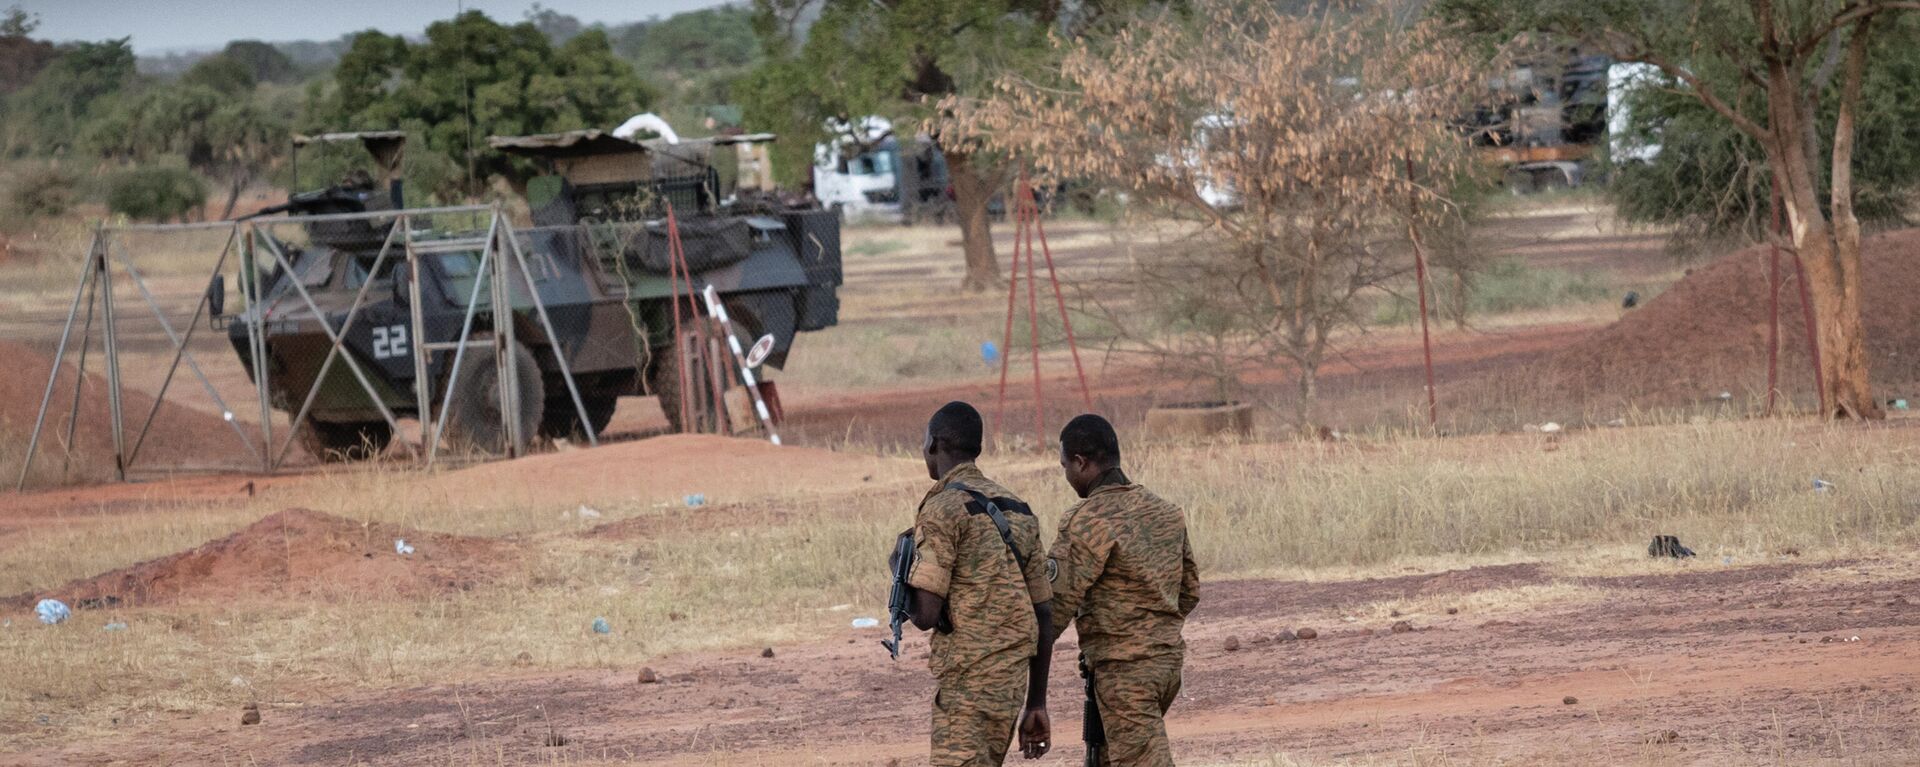 Des militaires burkinabè patrouillent près d'un véhicule blindé français stationné à Kaya, capitale de la région du centre-nord du Burkina Faso, après que des personnes ont manifesté pour s'opposer au passage d'un convoi logistique français vers le Niger voisin, le 20 novembre 2021 - Sputnik Afrique, 1920, 30.11.2021